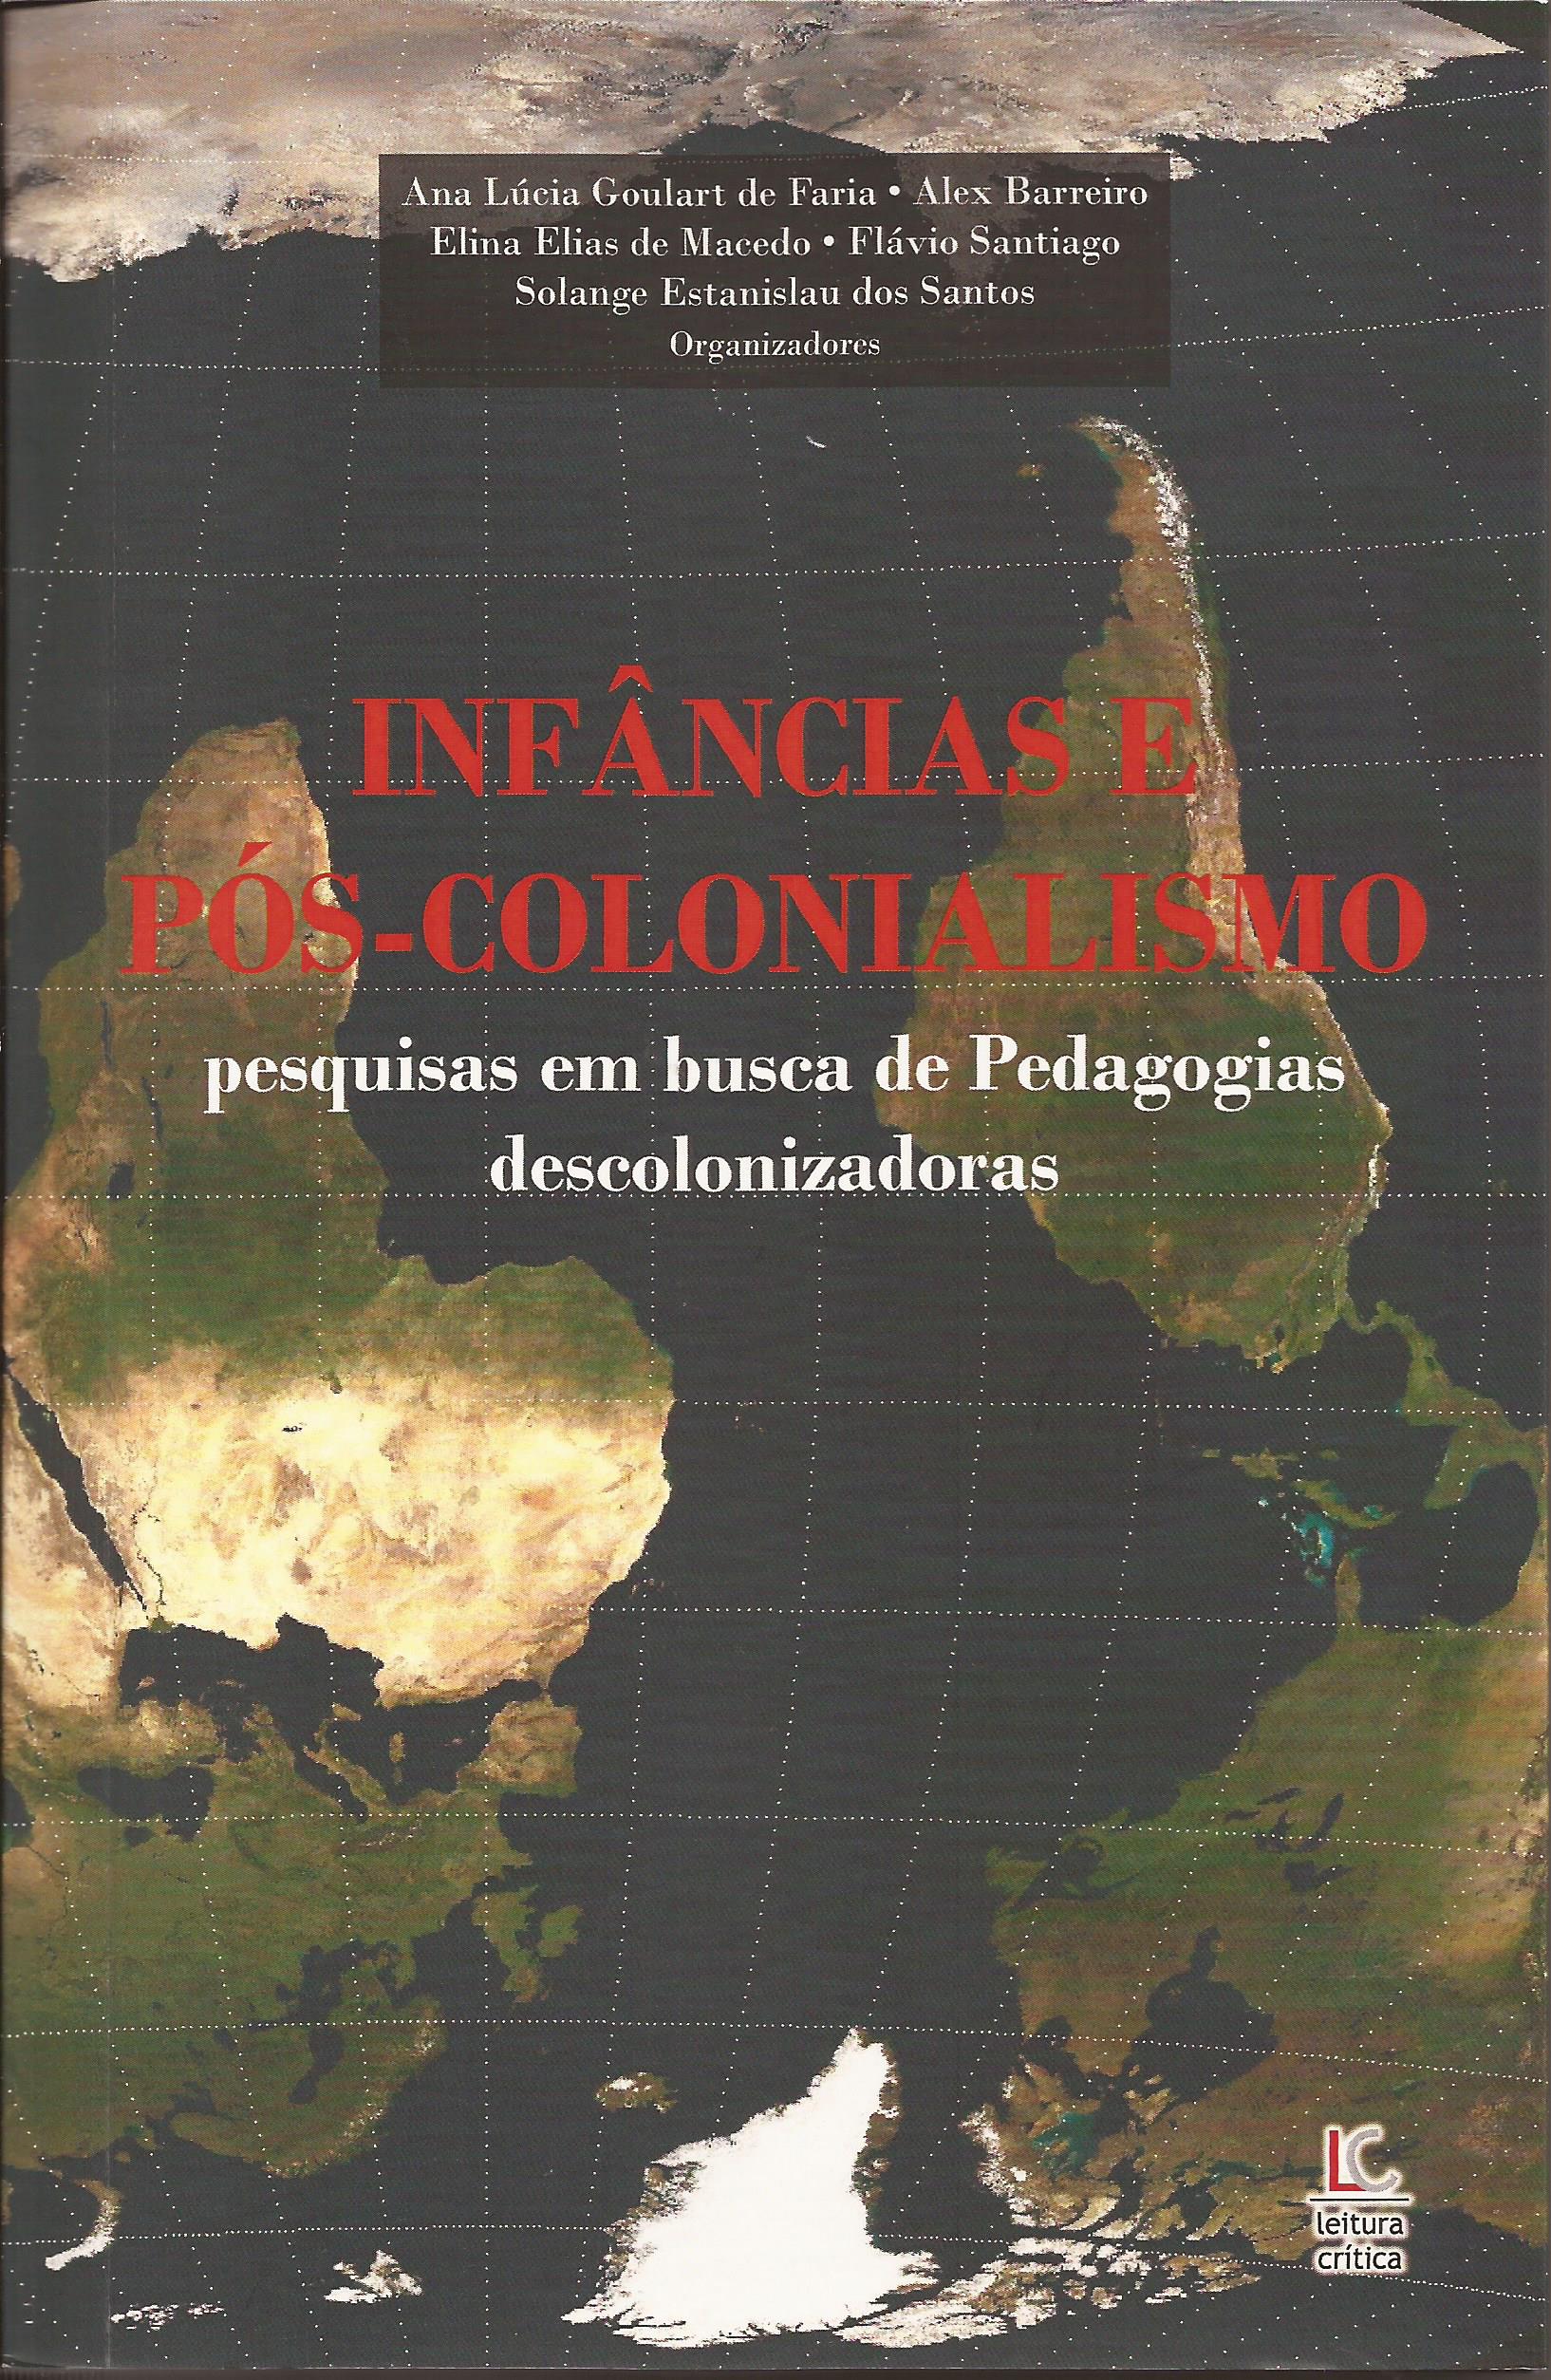 Infâncias e Pós-Colonialismo – pesquisas em busca de Pedagogias descolonizadoras